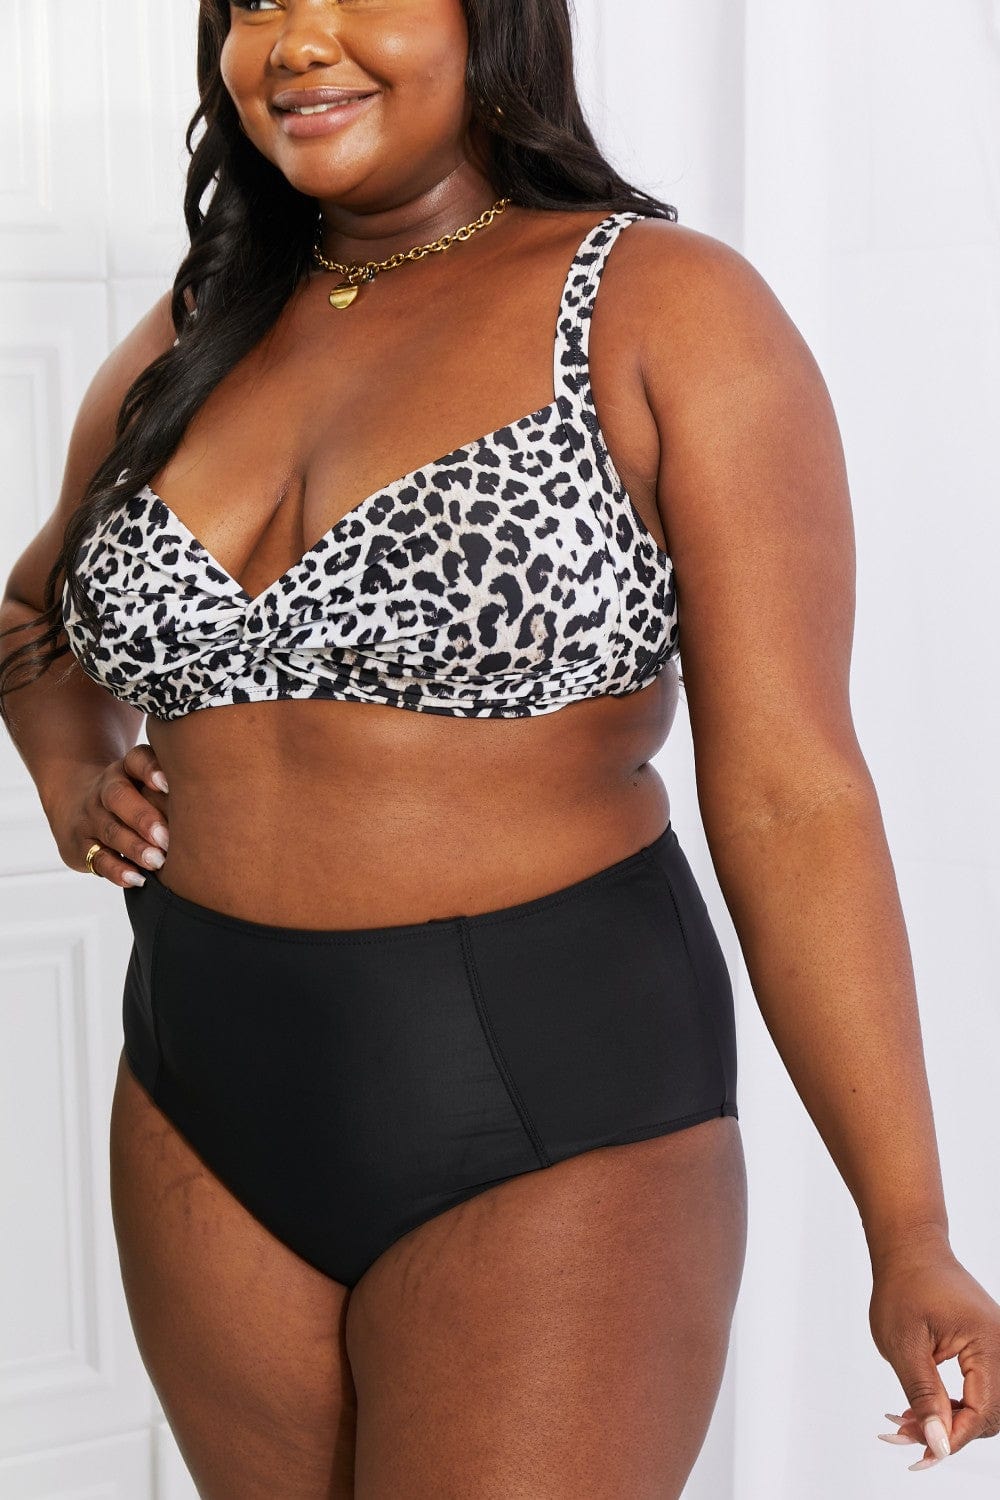 Take A Dip Twist High-Rise Bikini in Leopard - Body By J'ne